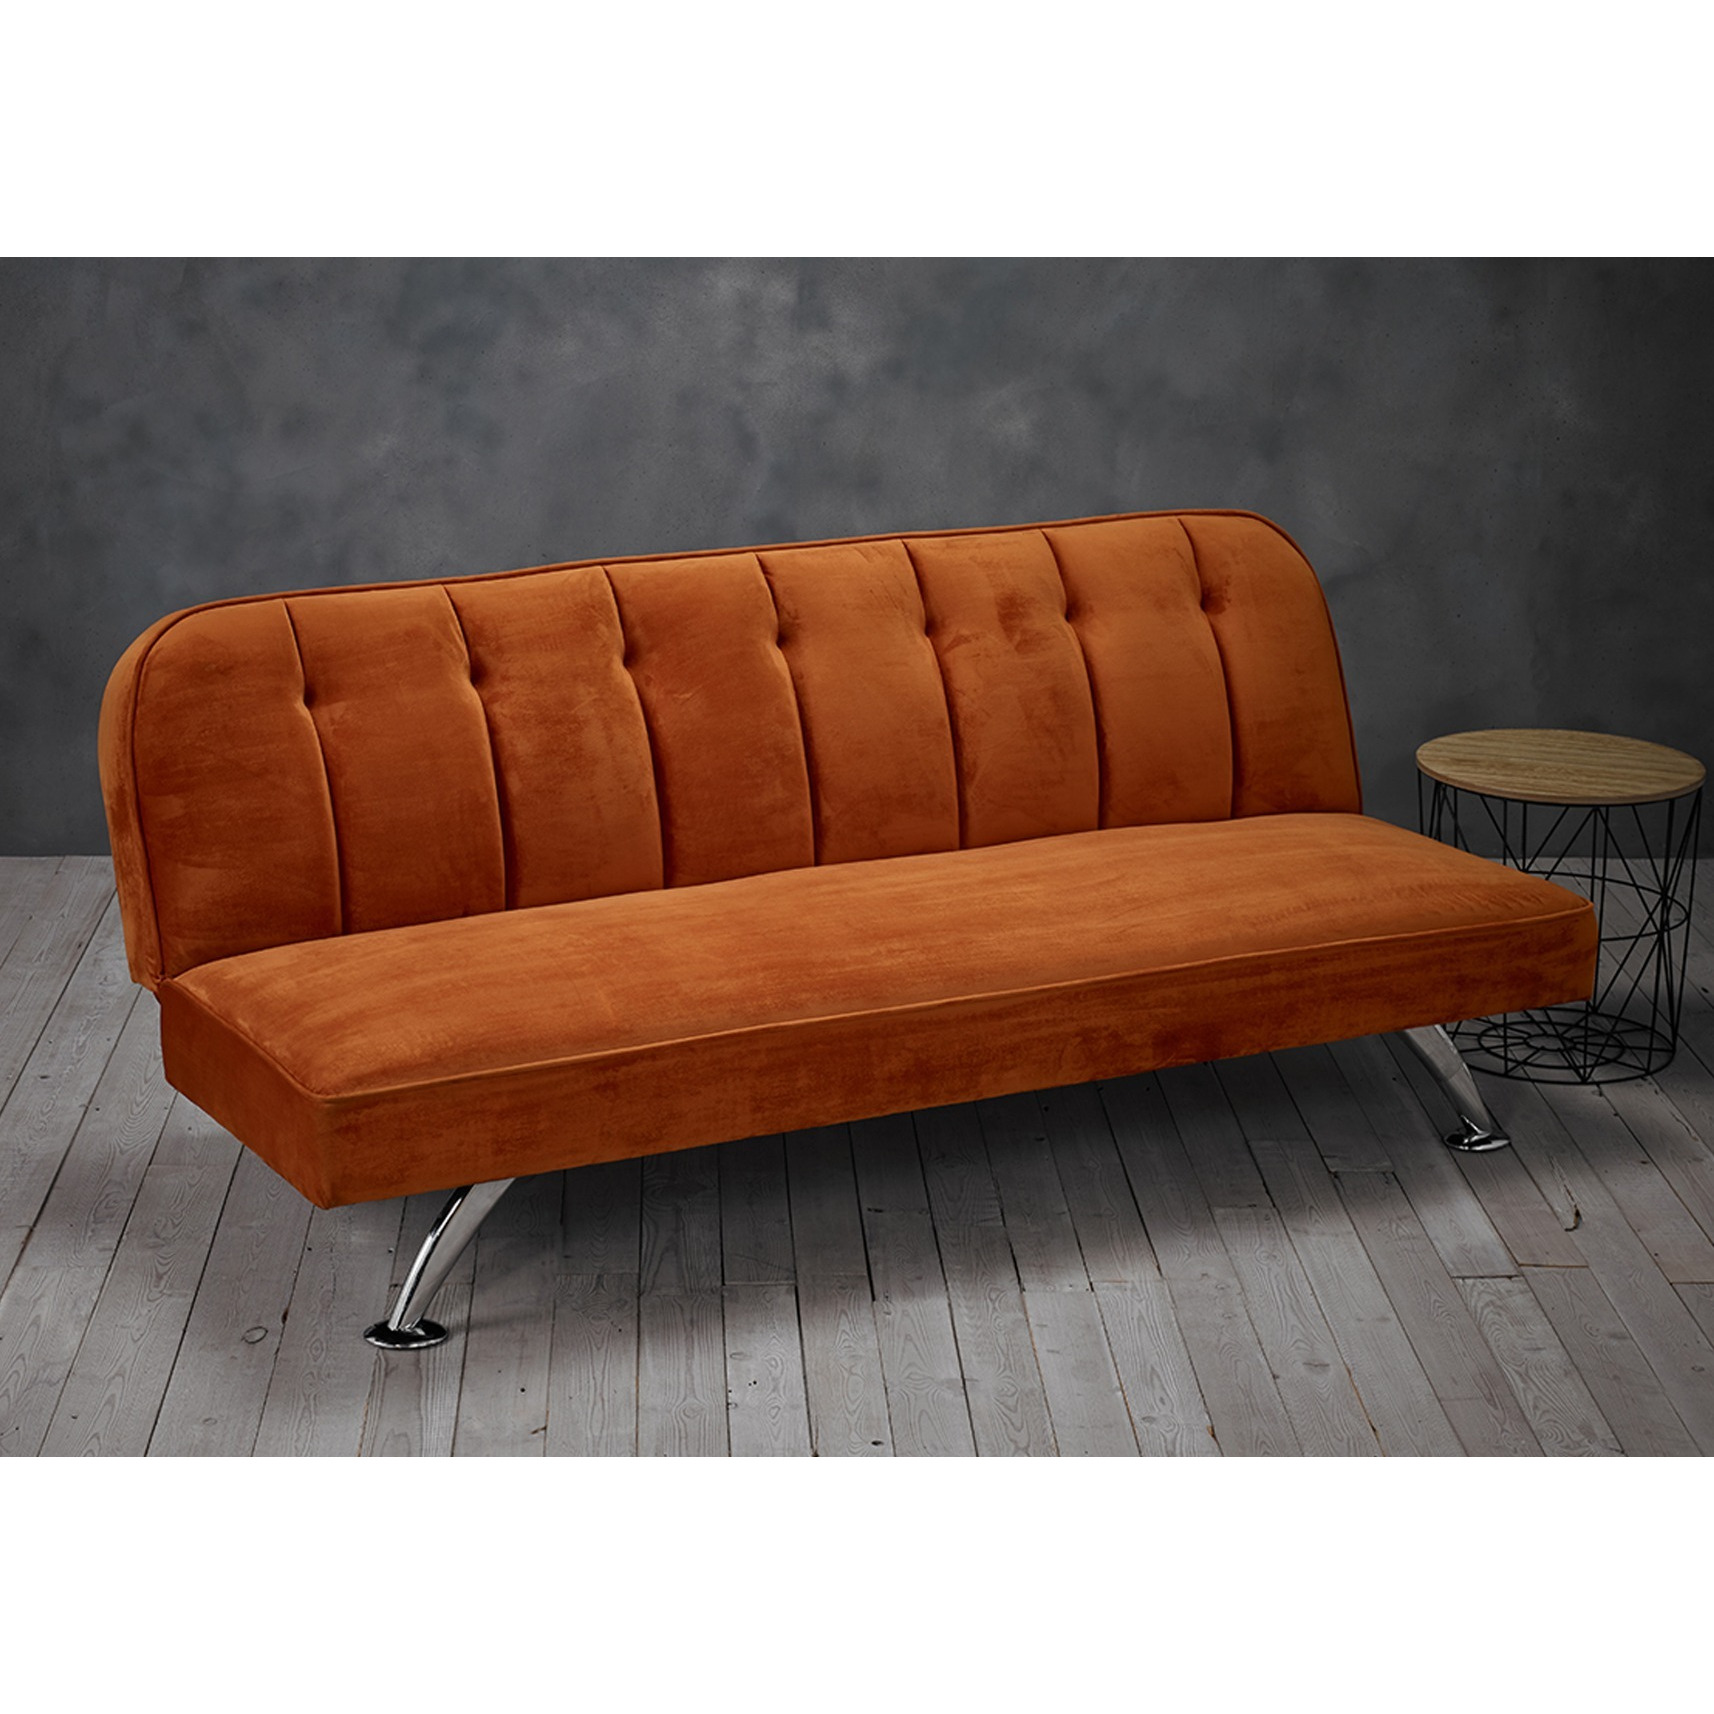 LPD Brighton Orange Fabric Sofa Bed - image 1